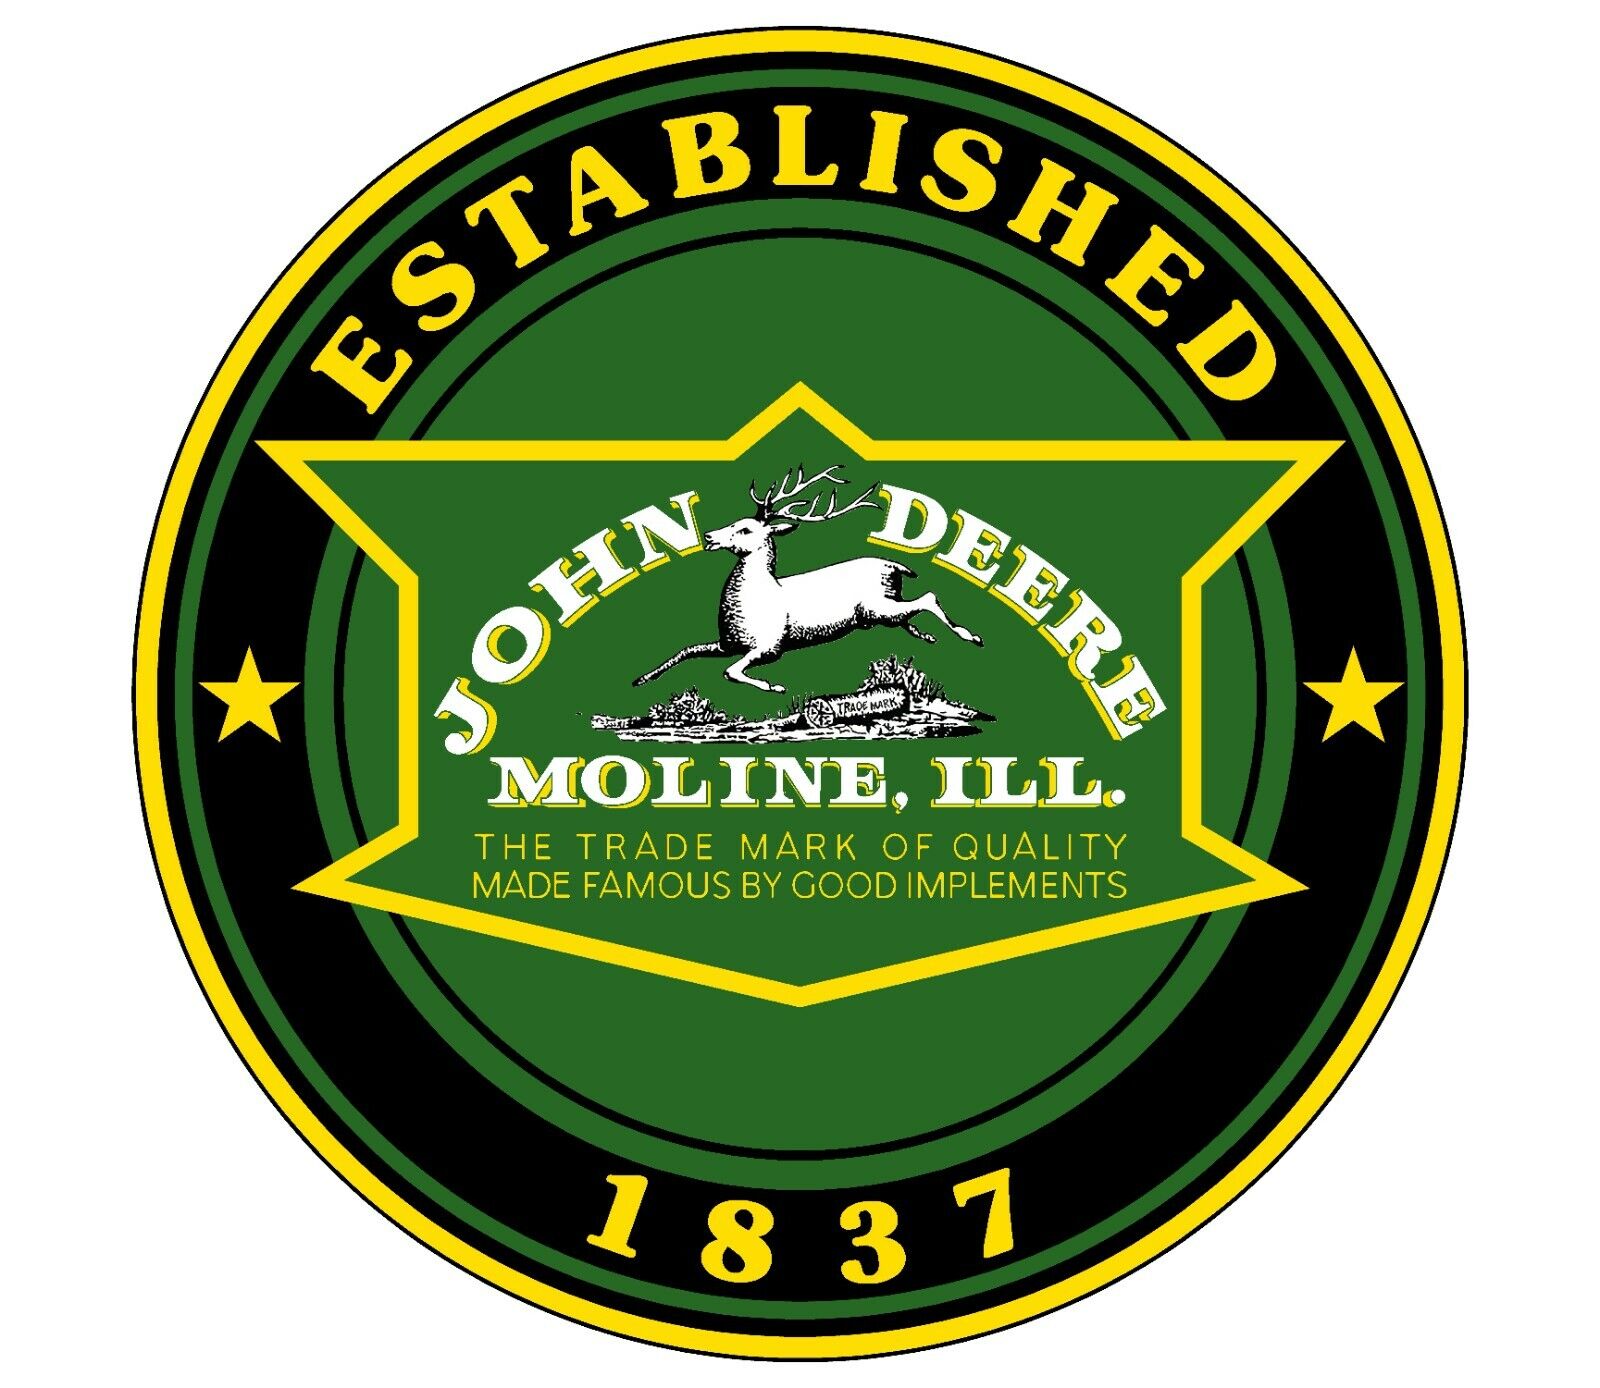 John Deere 1936 Vintage Historic Logo Established 1837 - Emblem Sticker Decal